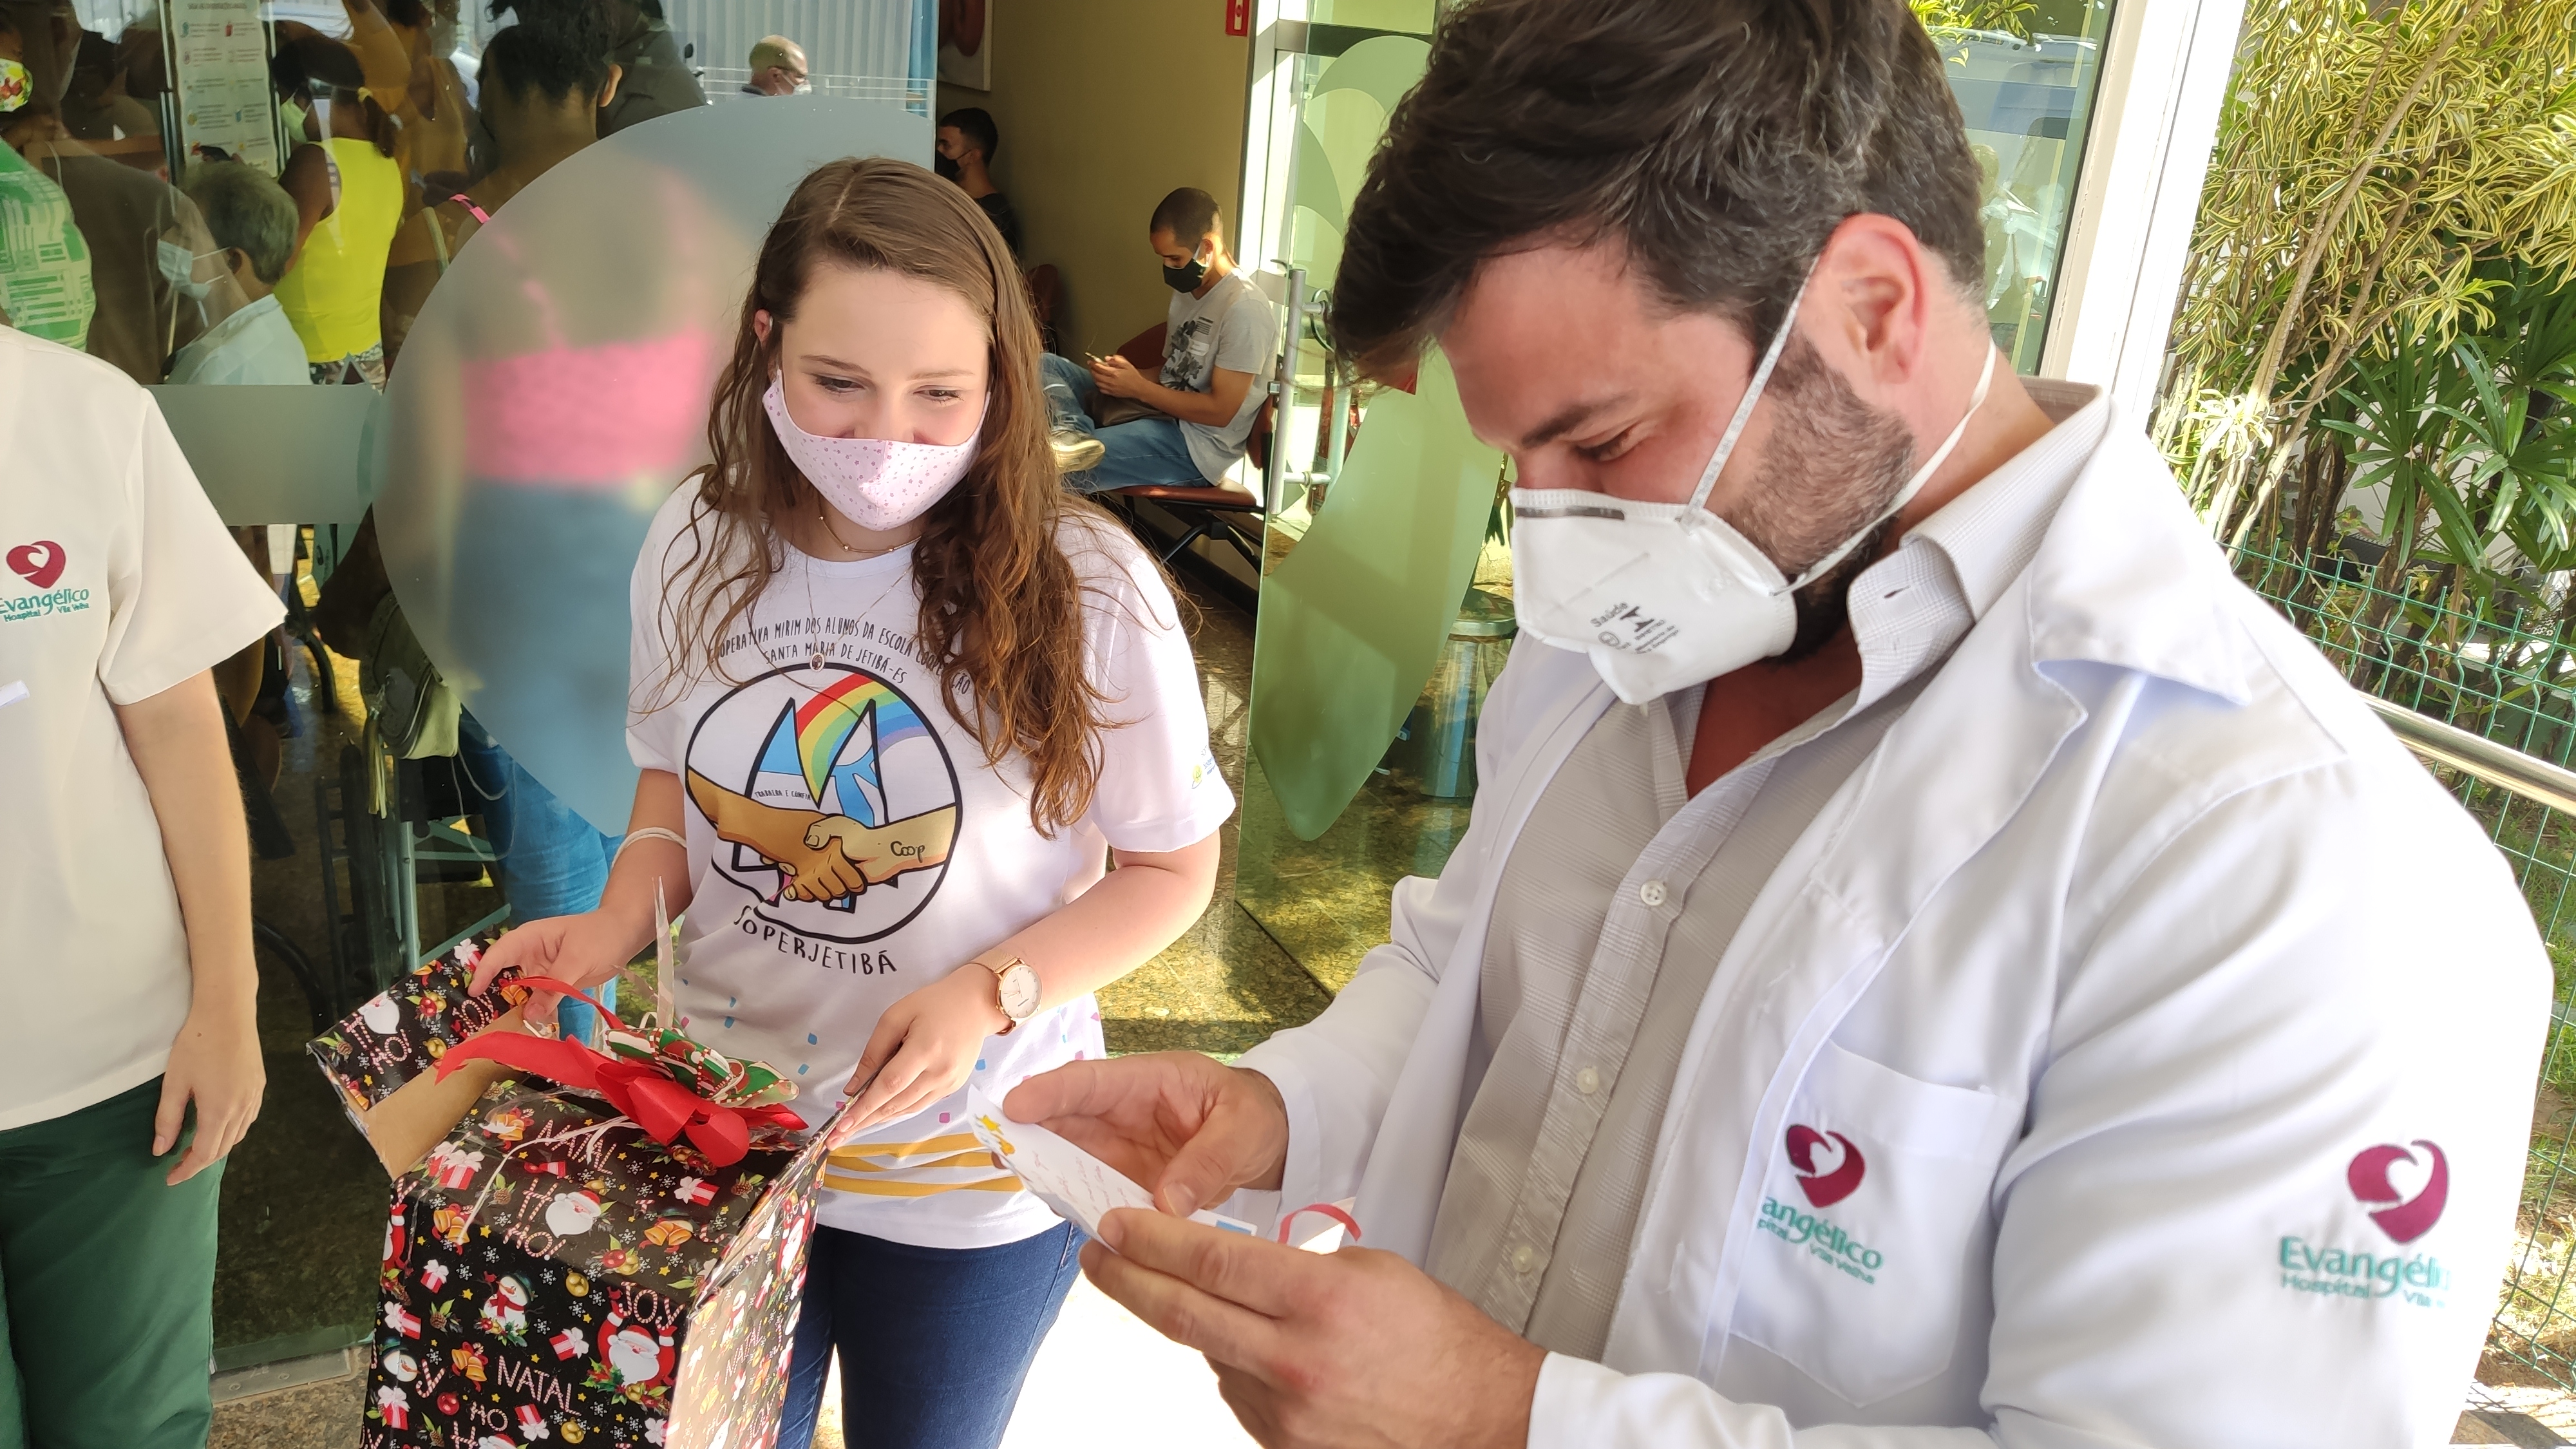 Ajude o Hospital Evangélico de Vila Velha a combater a COVID-19